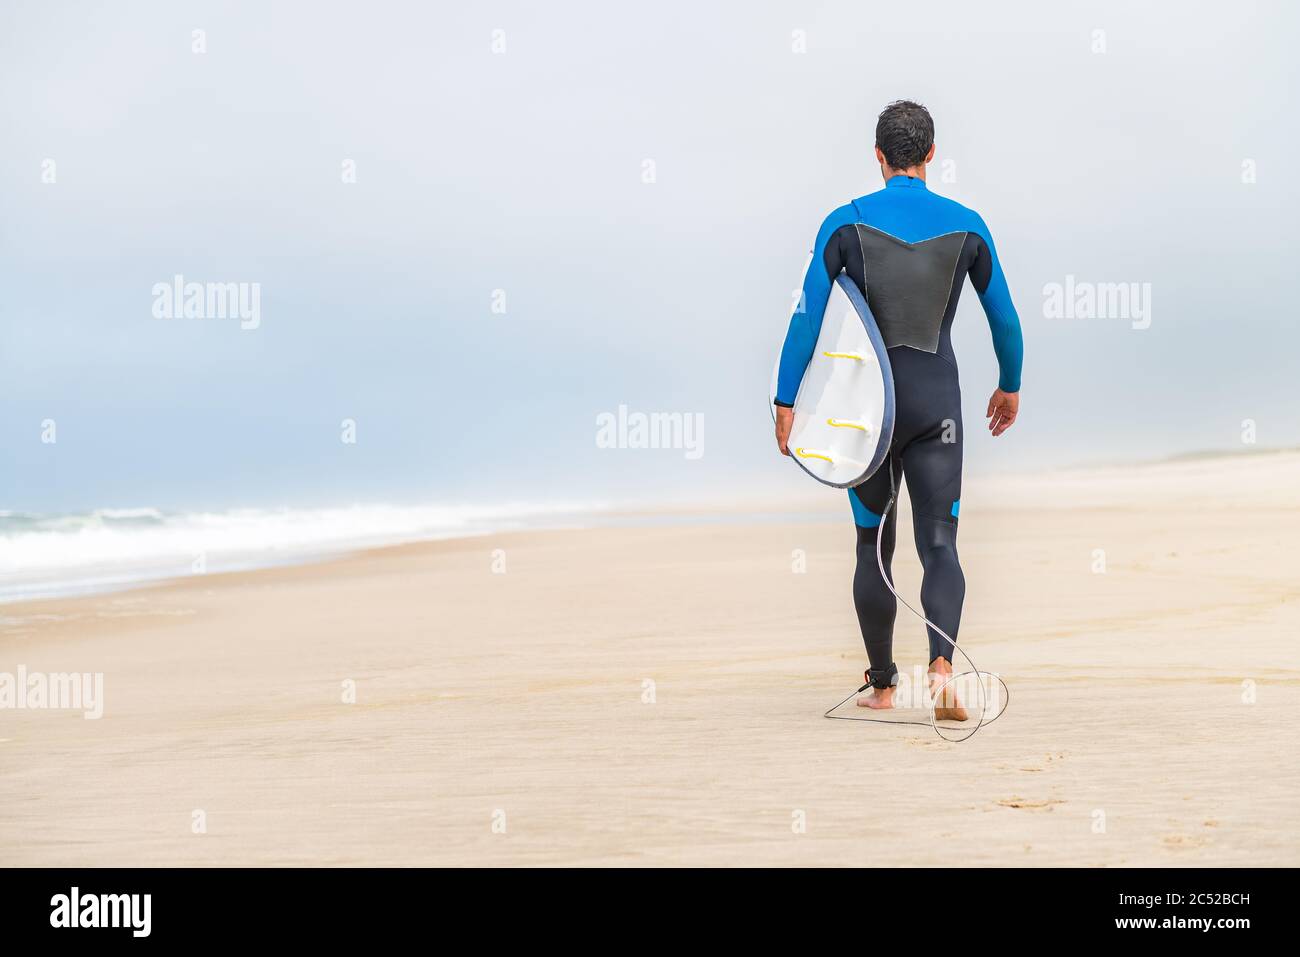 Un jeune surfeur mâle portant une combinaison, tenant une planche de surf sous son bras, marchant sur la plage après une séance de surf matinale. Banque D'Images